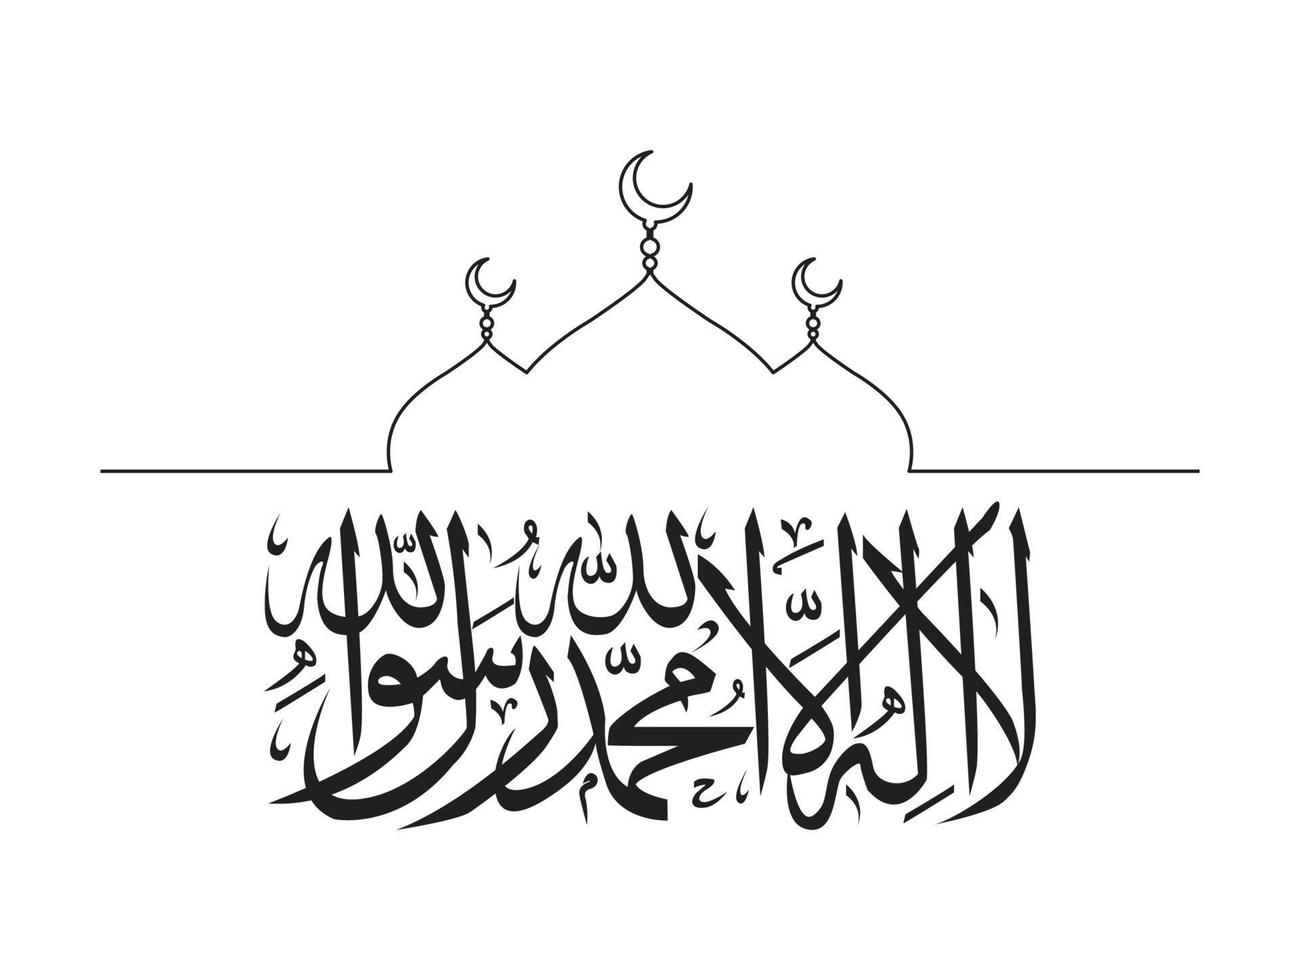 moské vektor design med islam tema